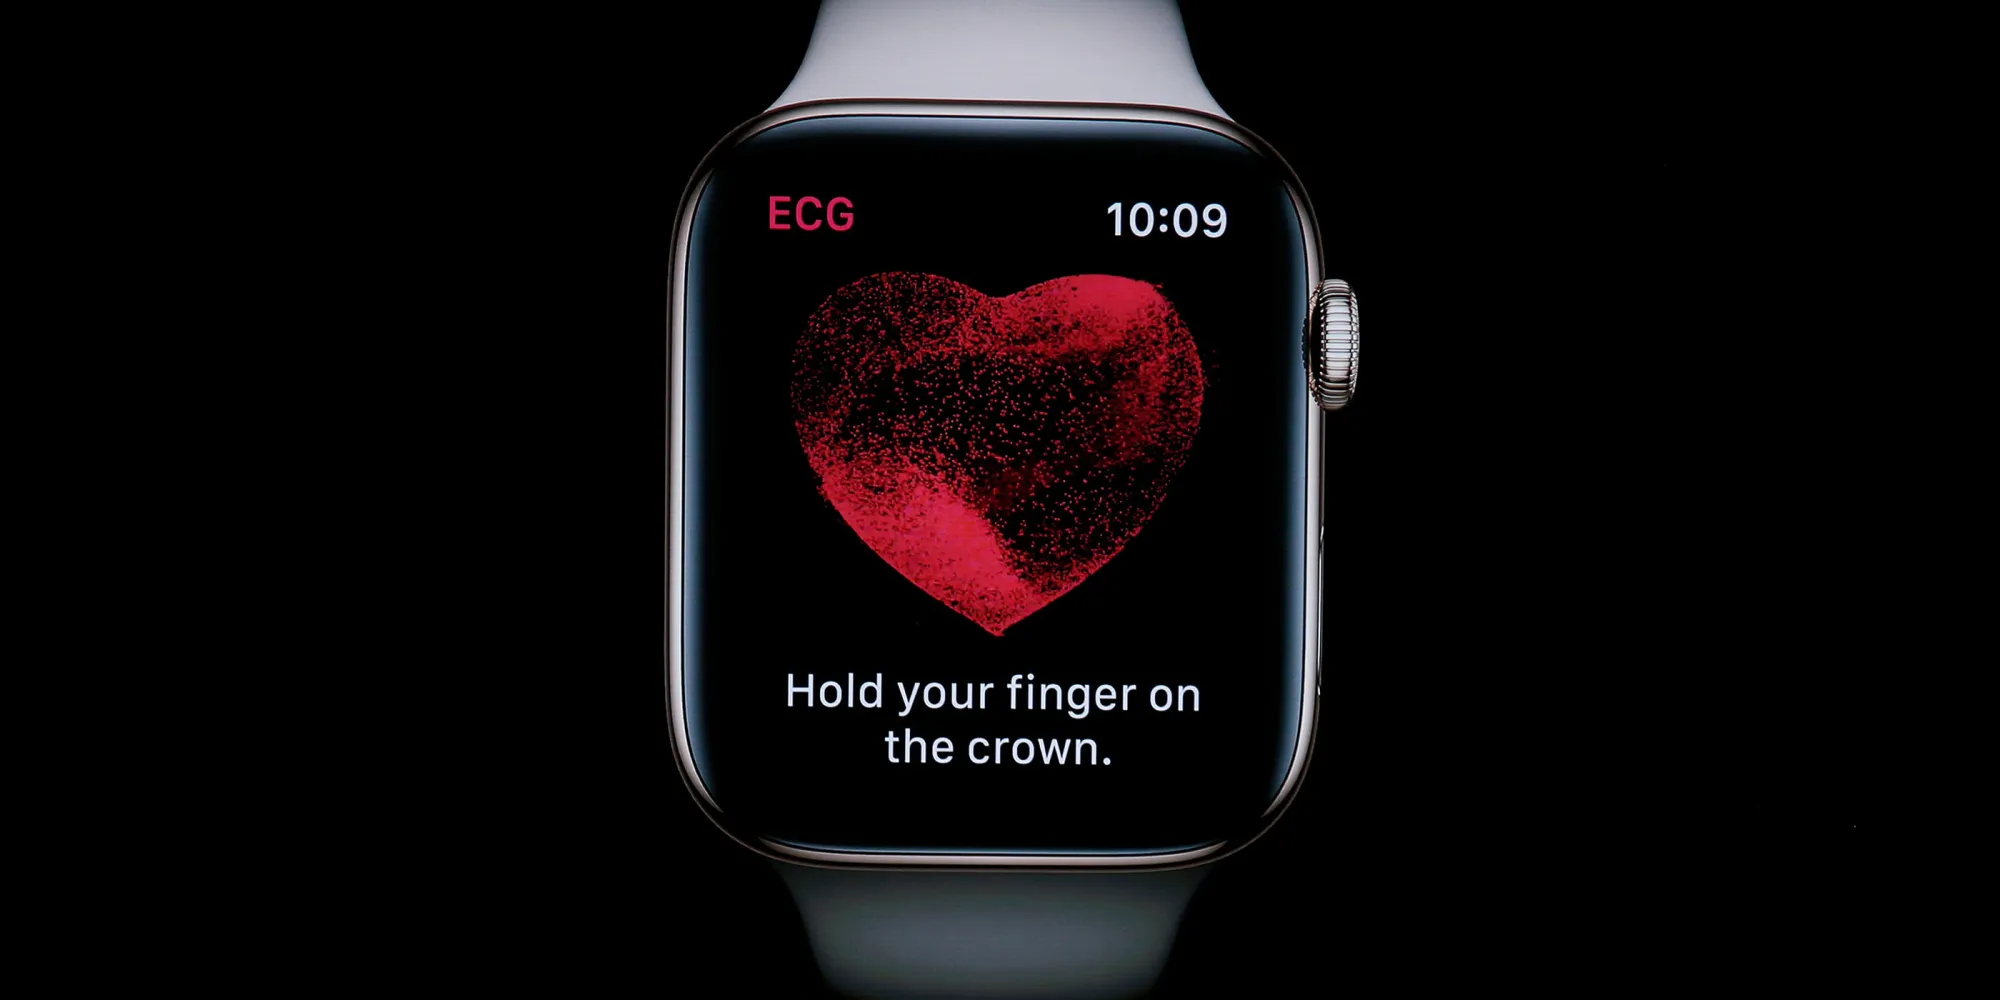 Le autorità statunitensi potrebbero vietare le vendite dello smartwatch Apple Watch per violazione di brevetto